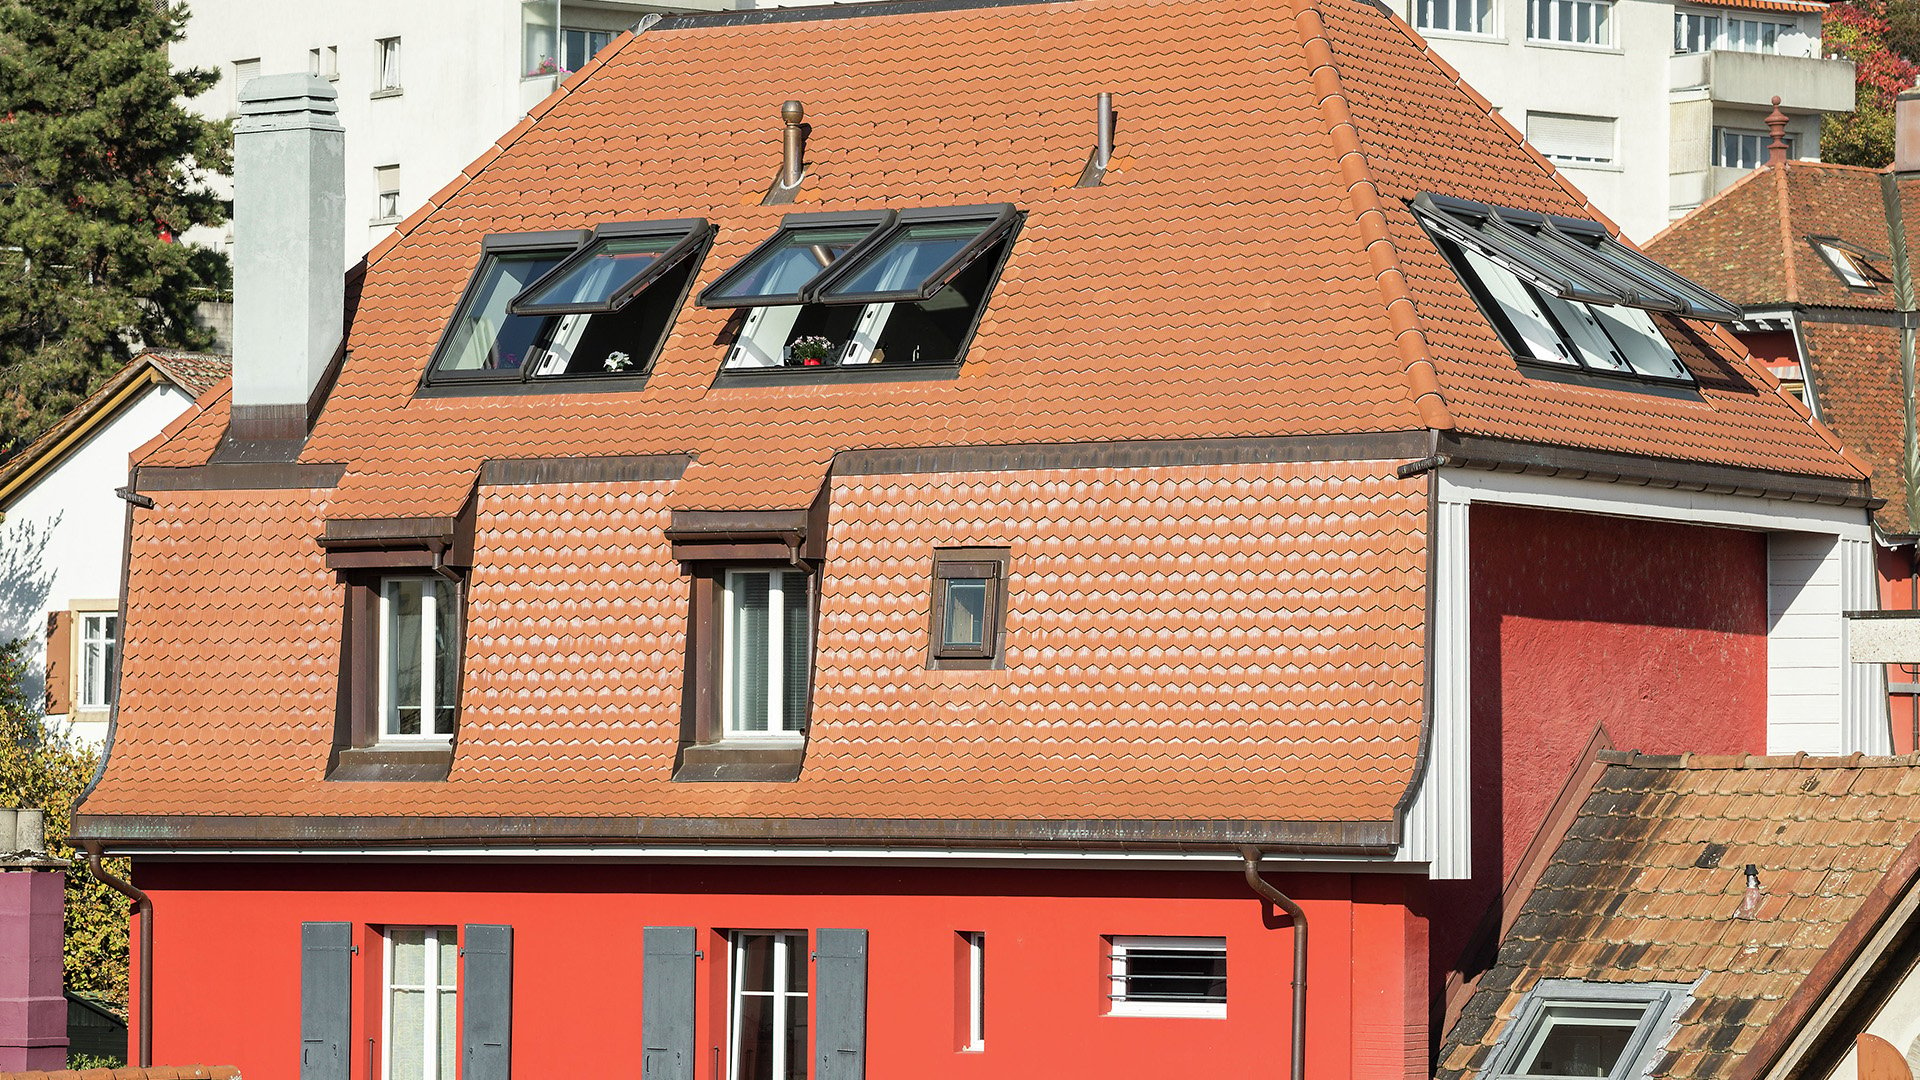 Haus mit Mansarddach und Roto Dachfenstern